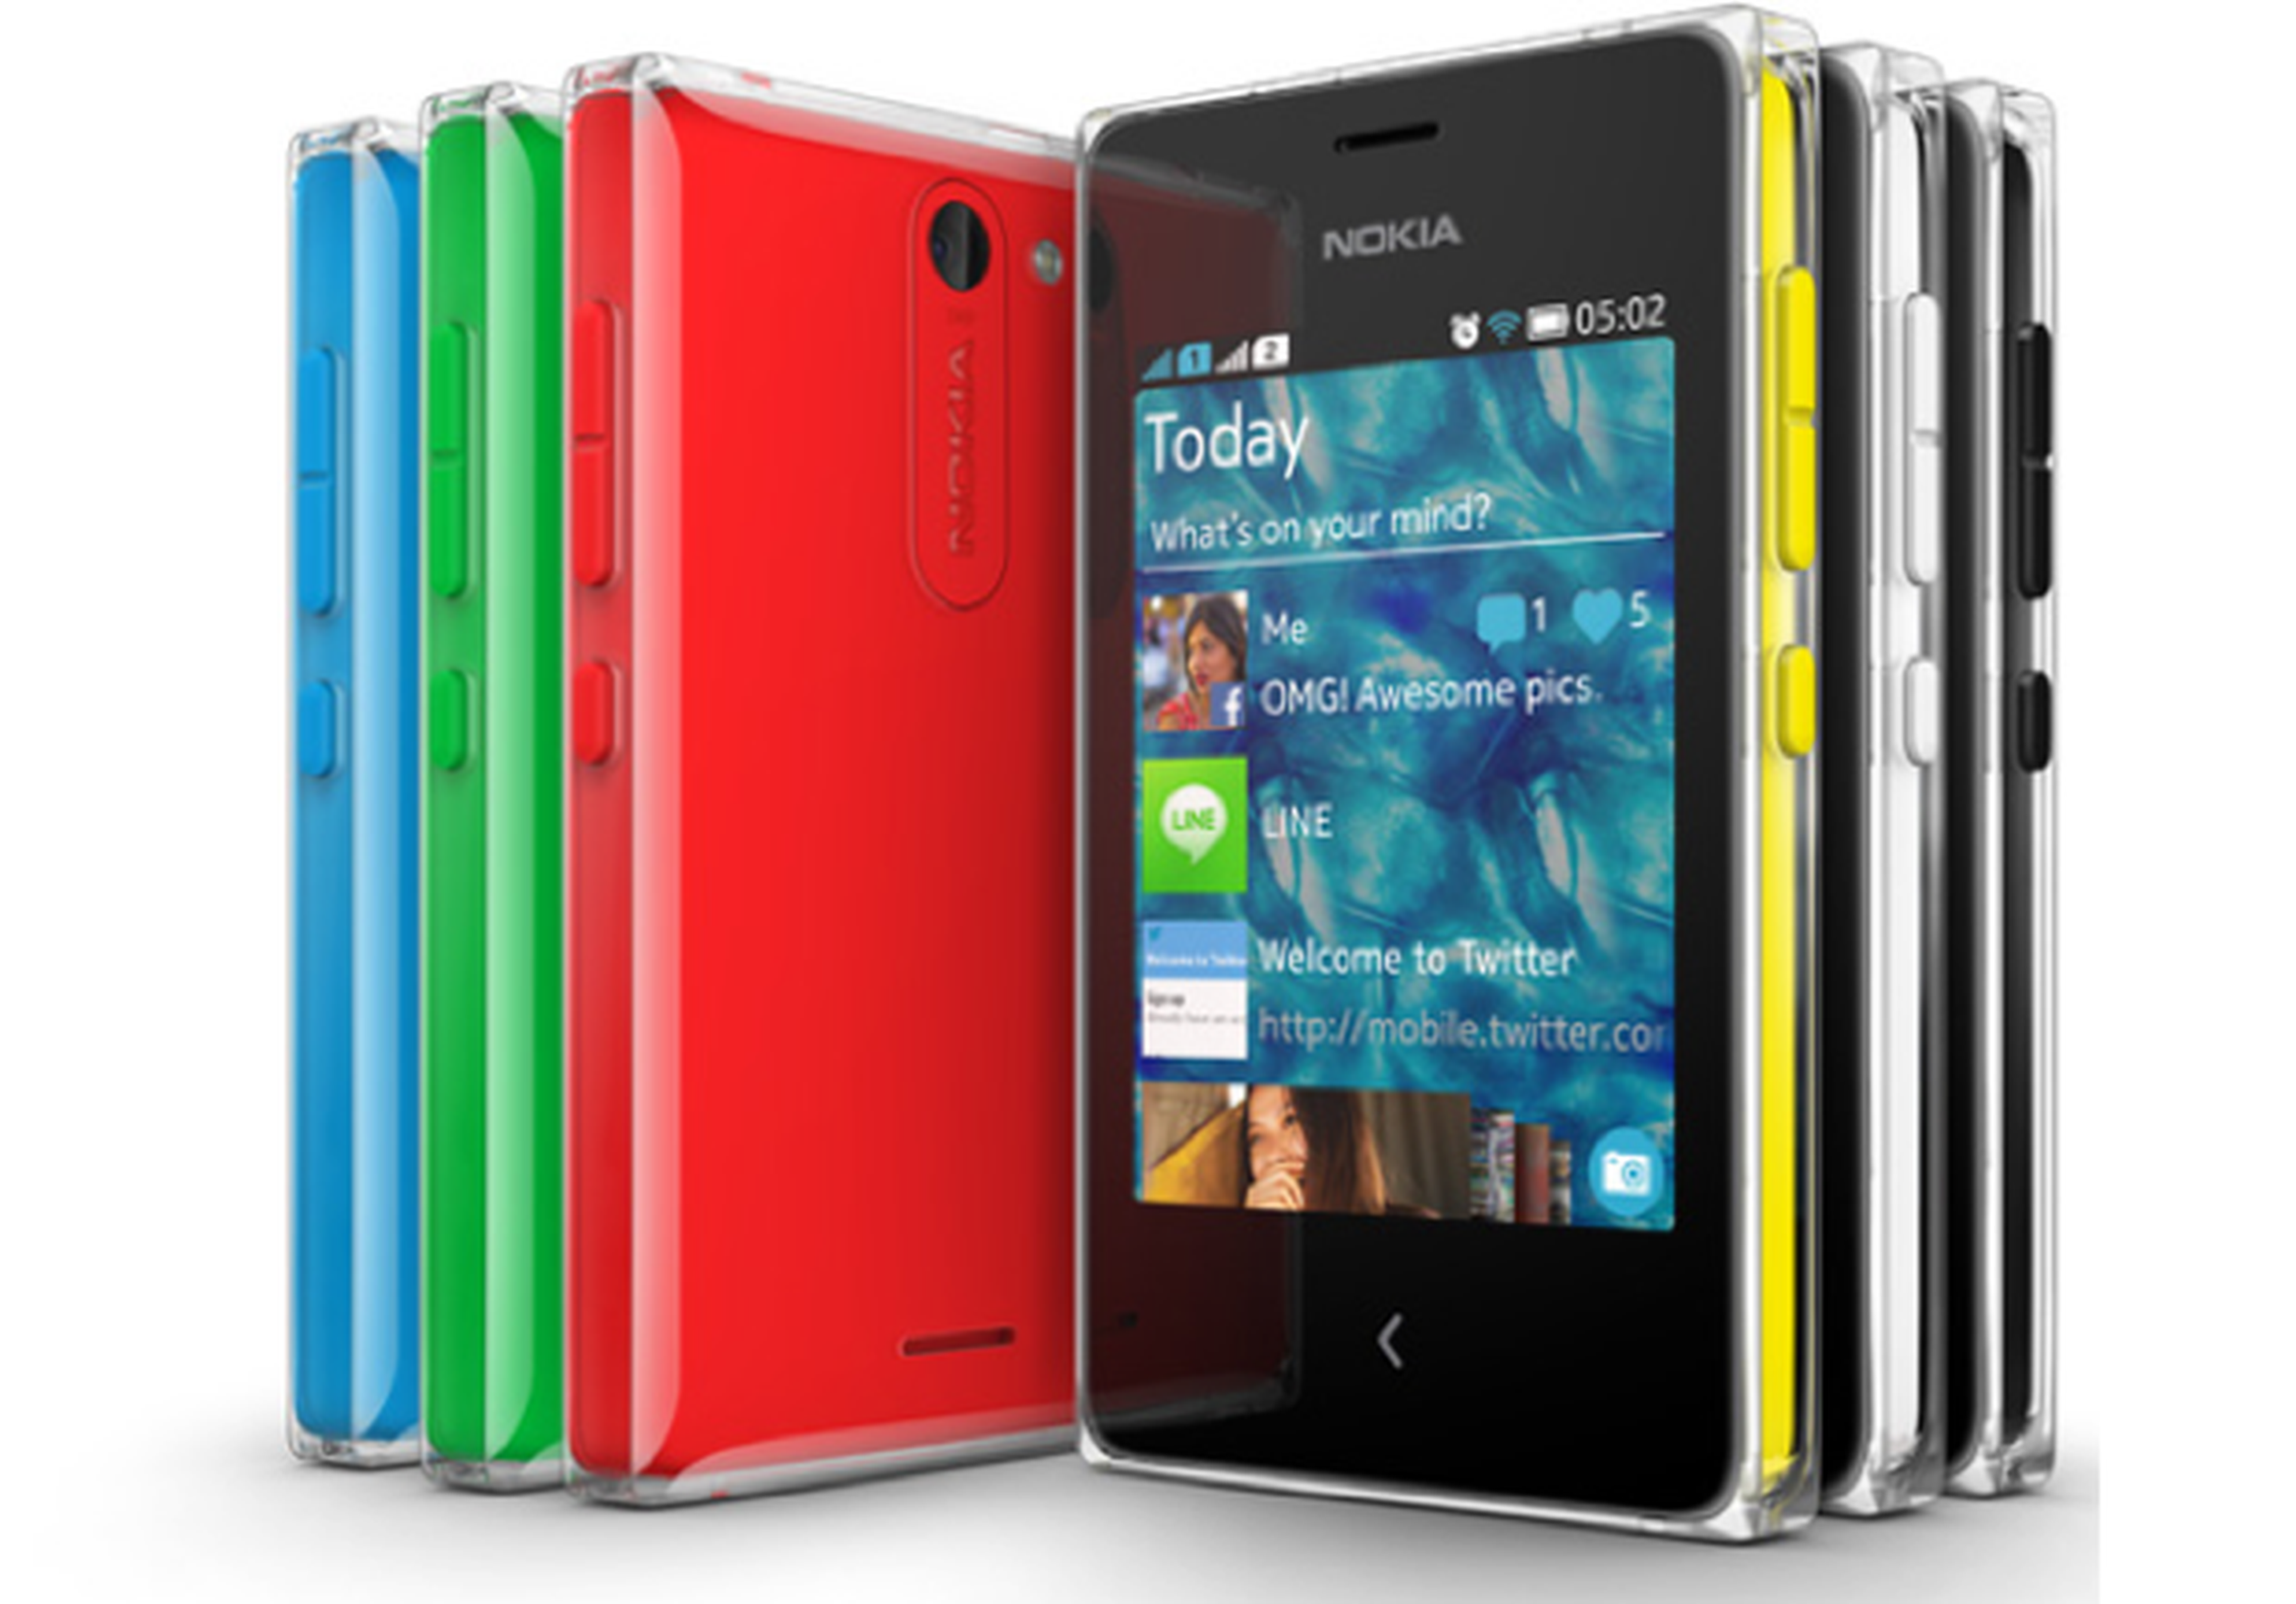 Nueva gama Nokia Asha expande número de apps